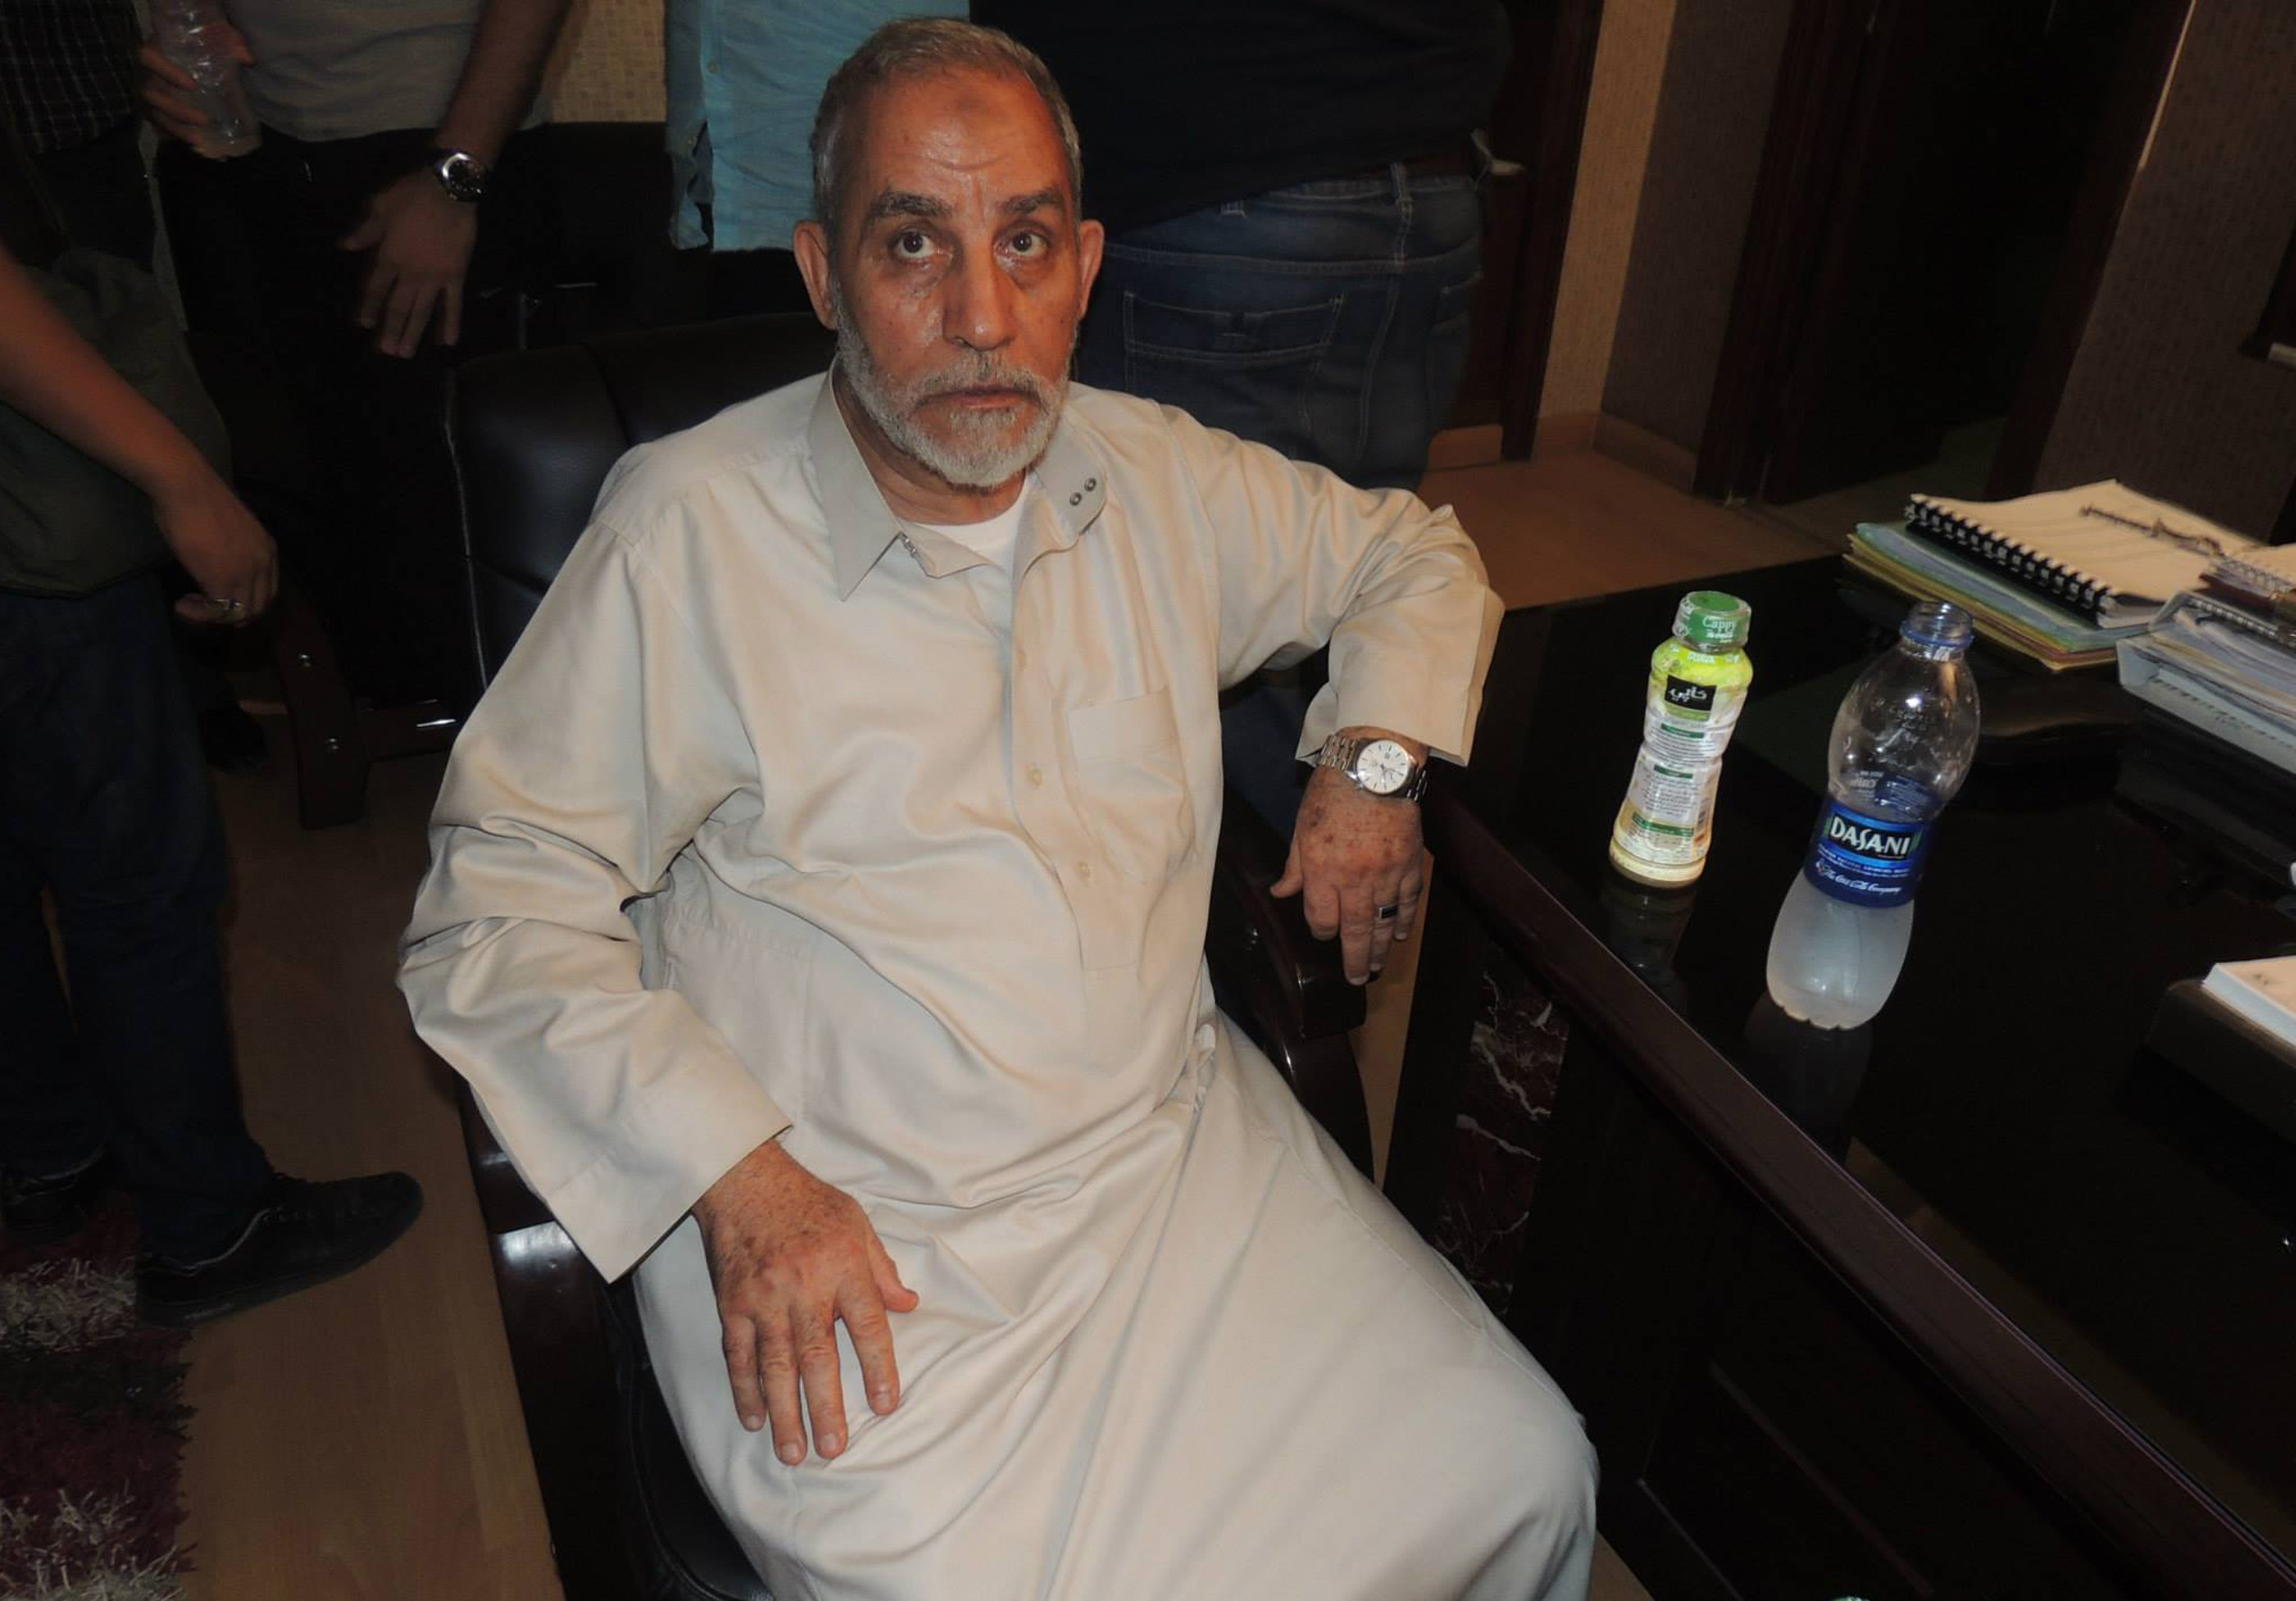 Trial of Muslim Brotherhood leaders political, says lawyer